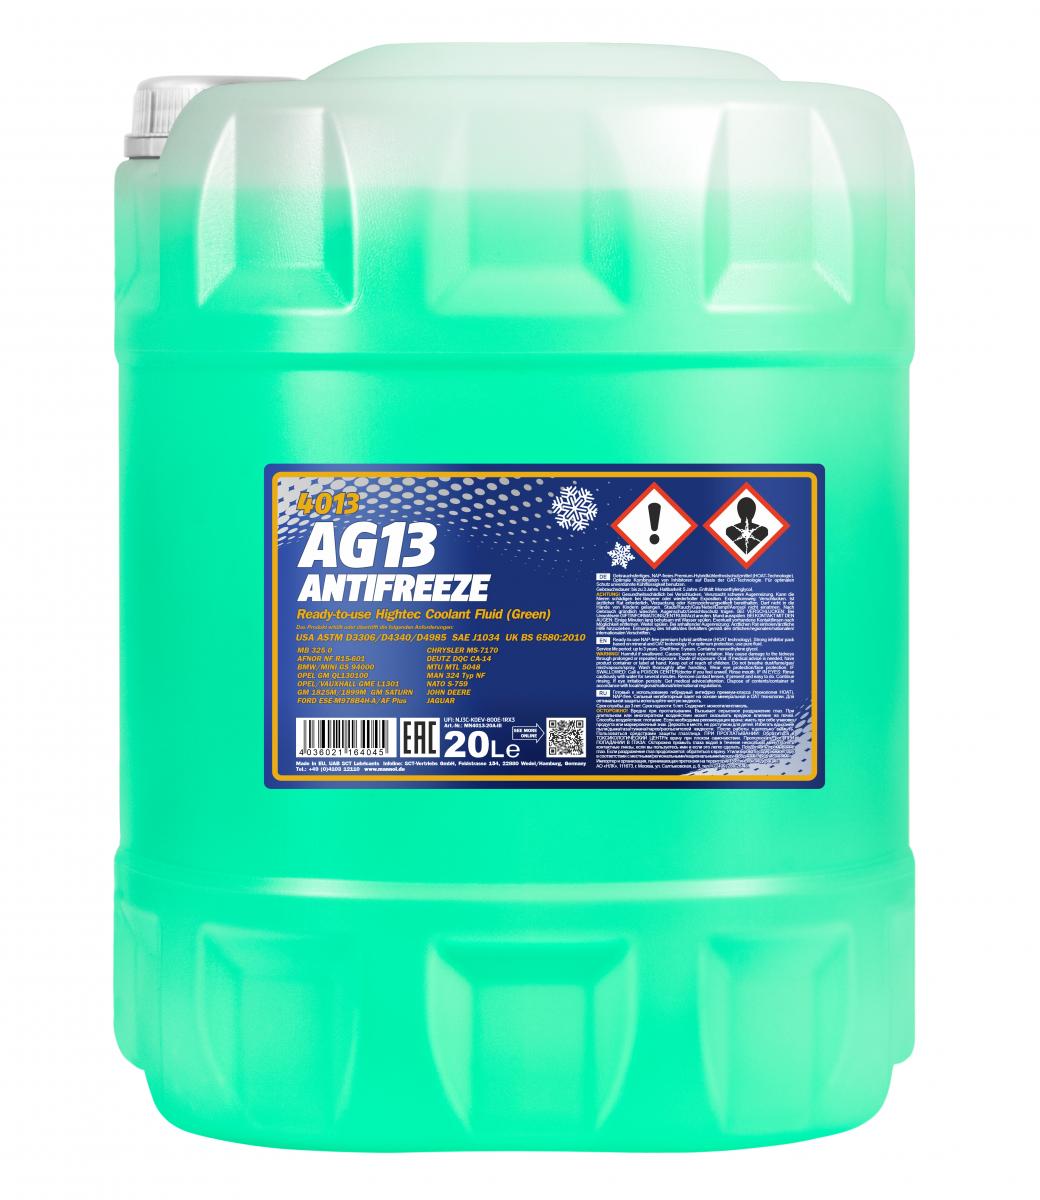 MN Antifreeze AG 13 (-40) Hightec